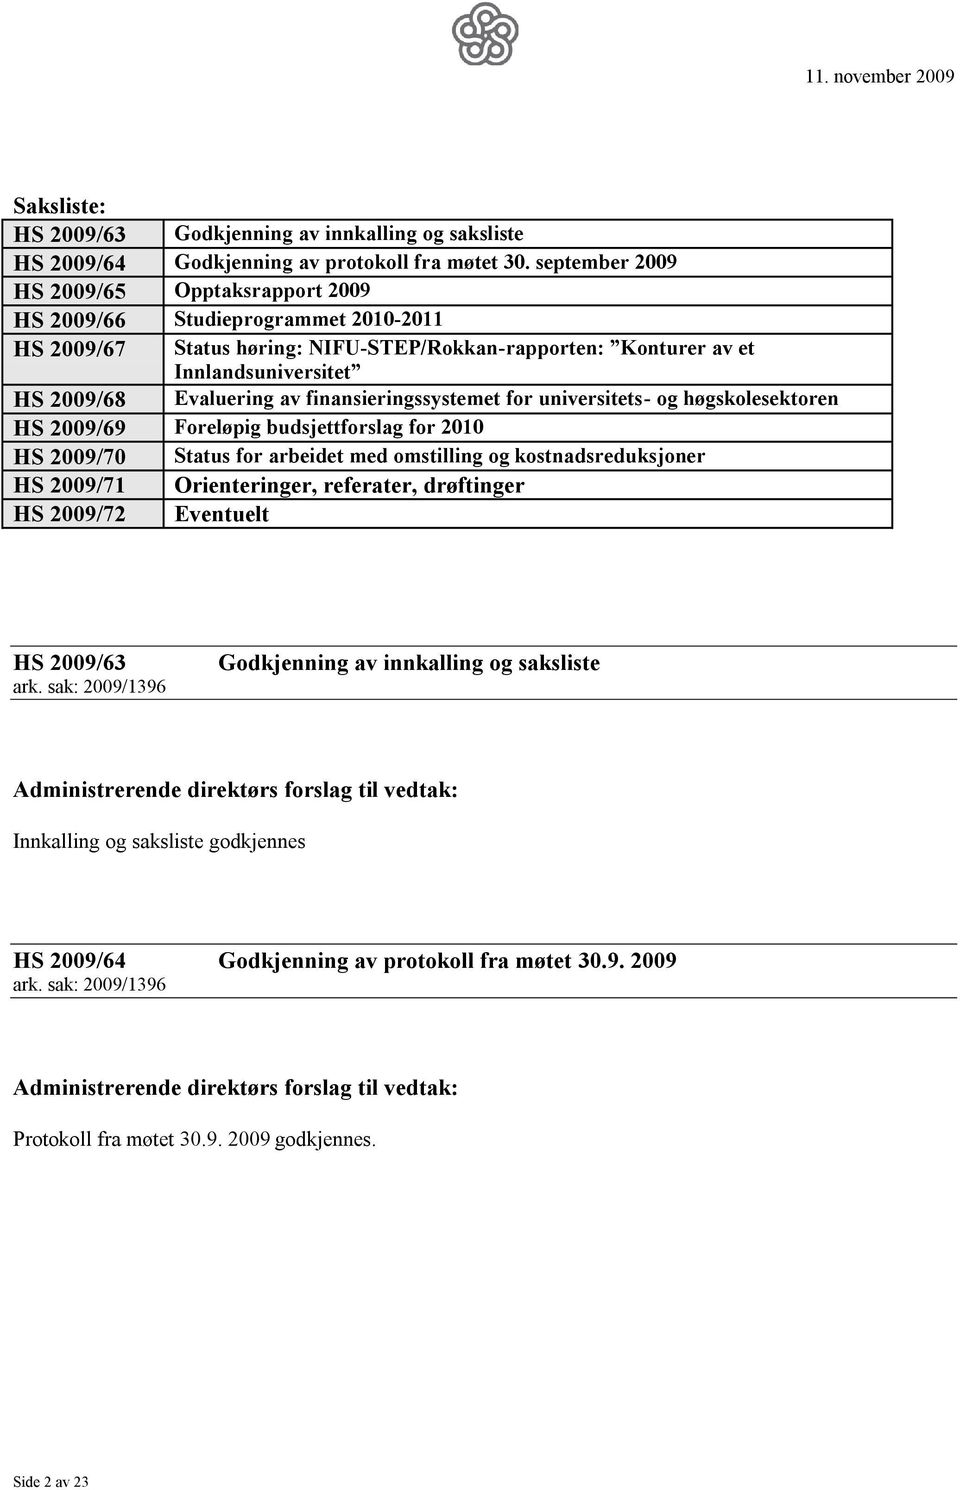 finansieringssystemet for universitets- og høgskolesektoren HS 2009/69 Foreløpig budsjettforslag for 2010 HS 2009/70 Status for arbeidet med omstilling og kostnadsreduksjoner HS 2009/71